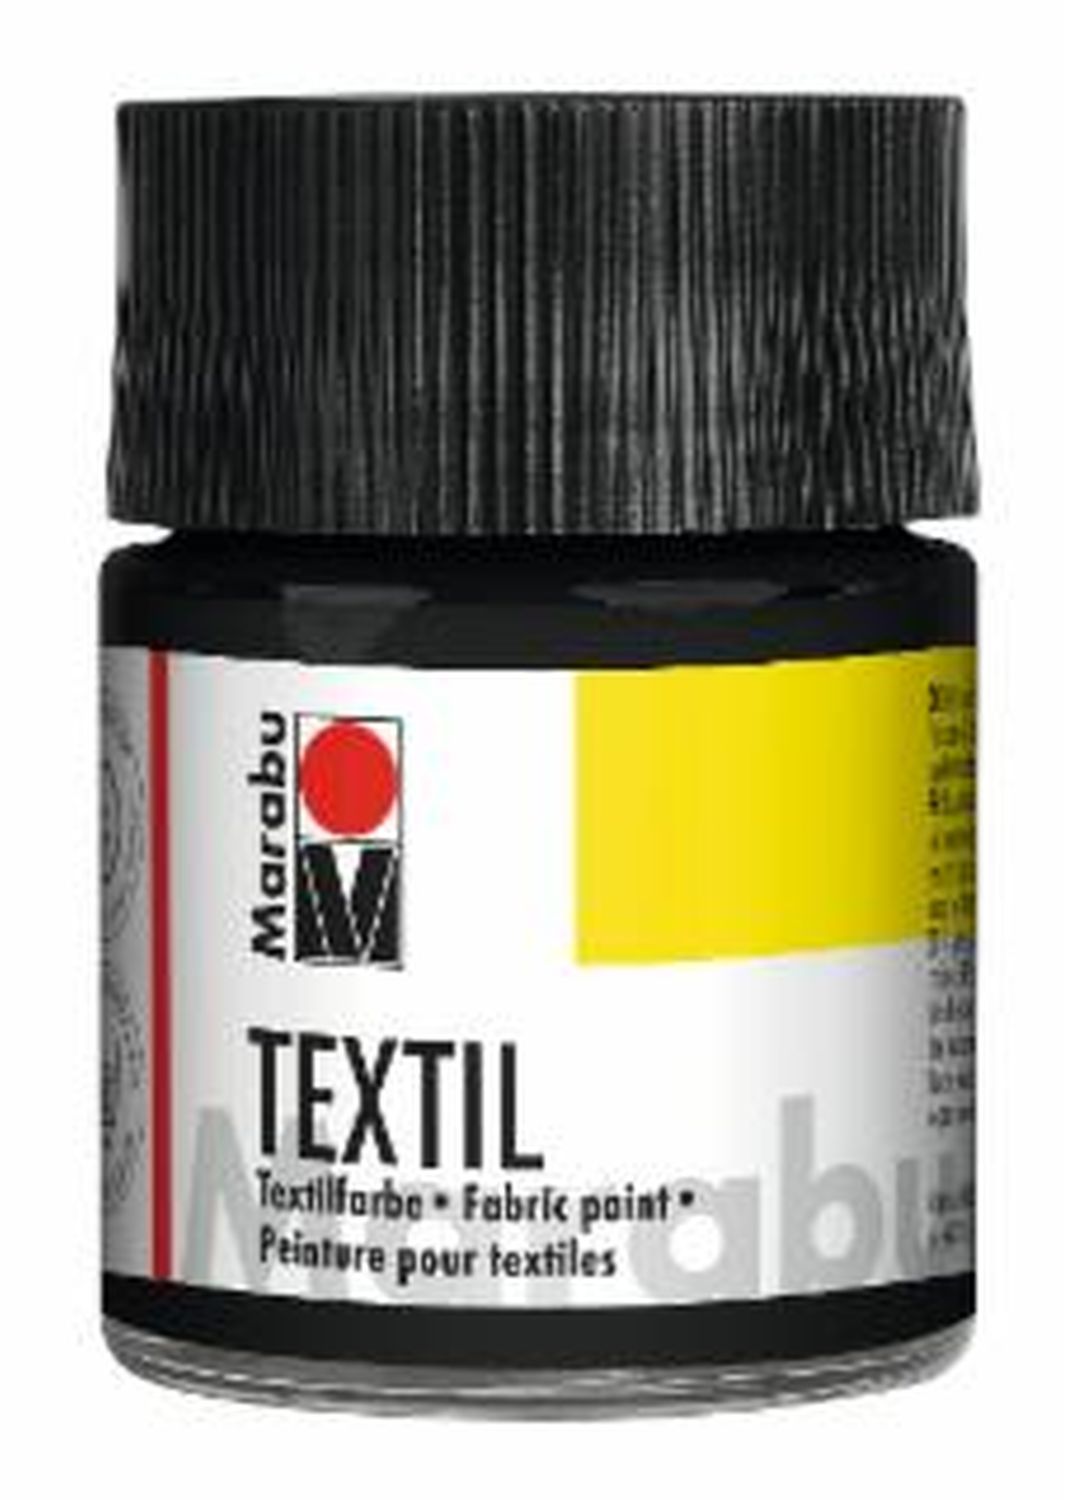 Textil - Schwarz 073, 50 ml